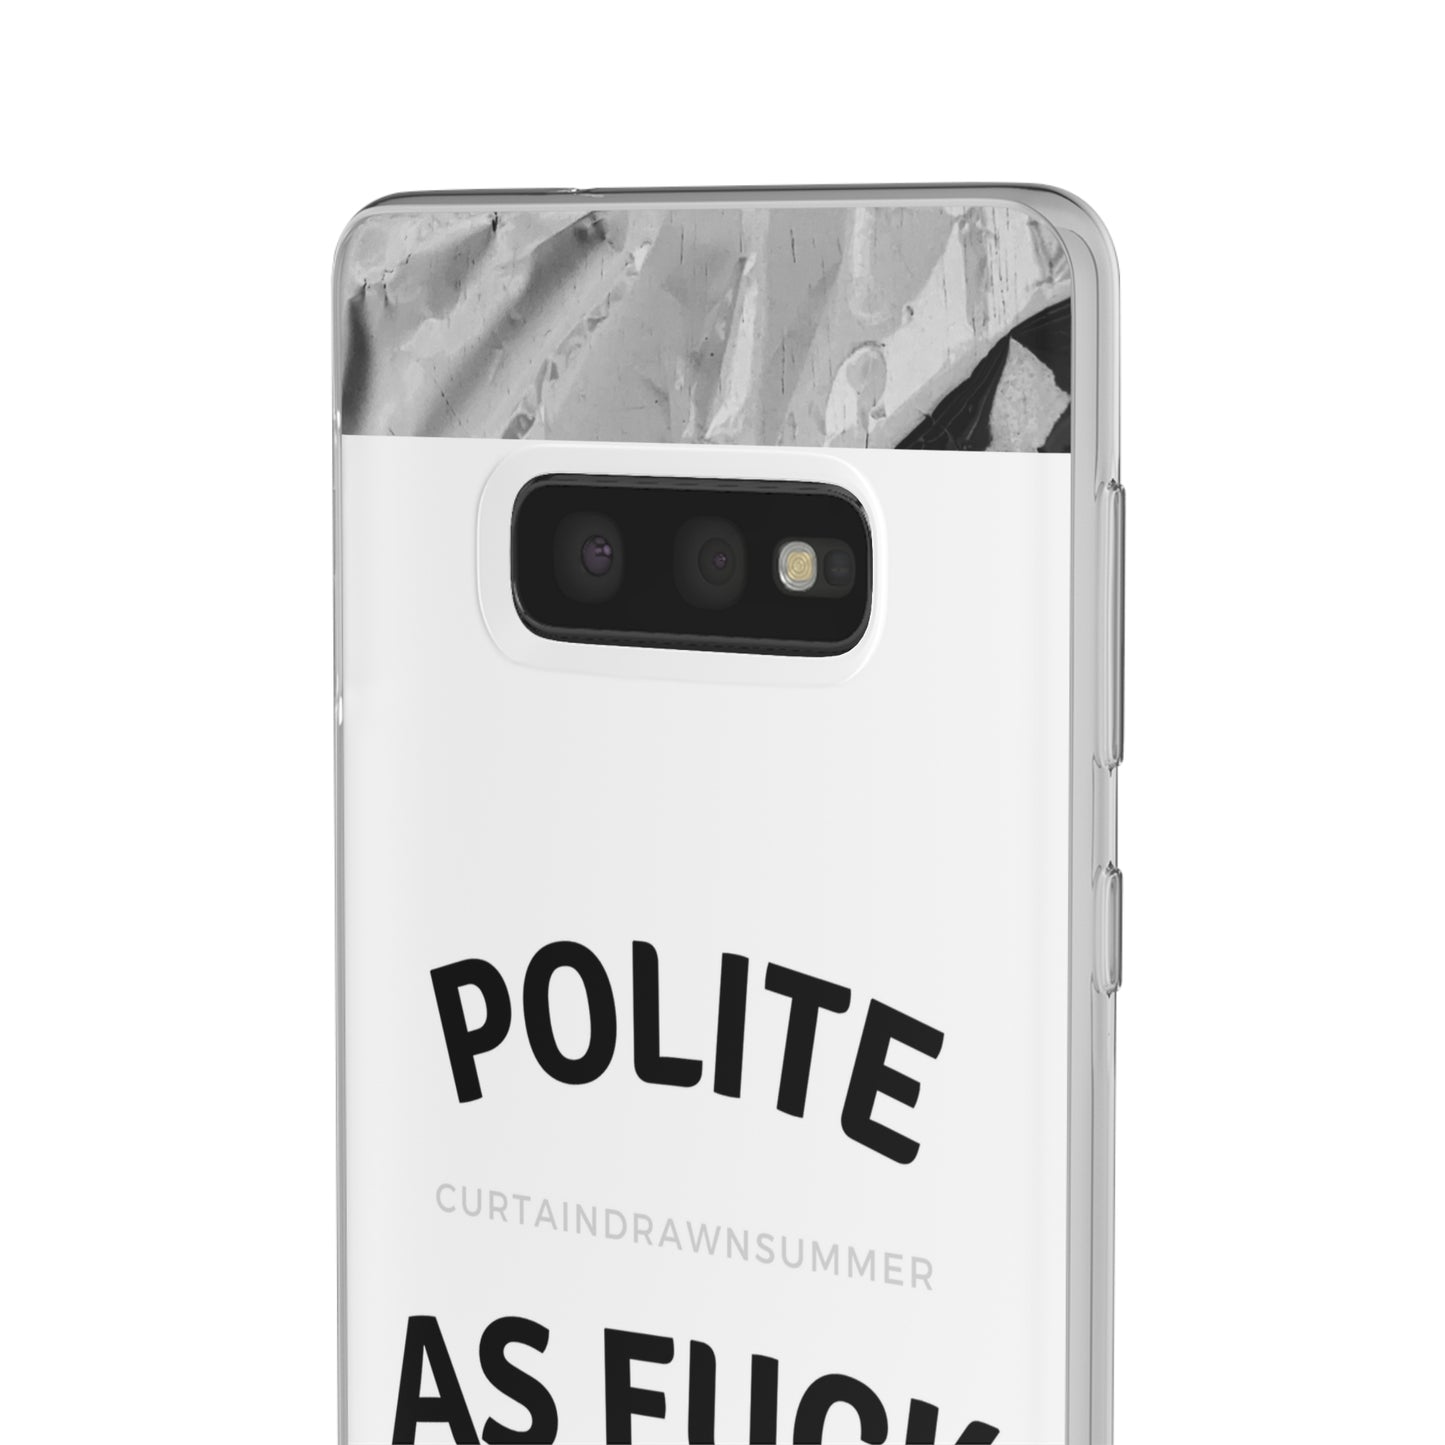 Polite AF Phone Case